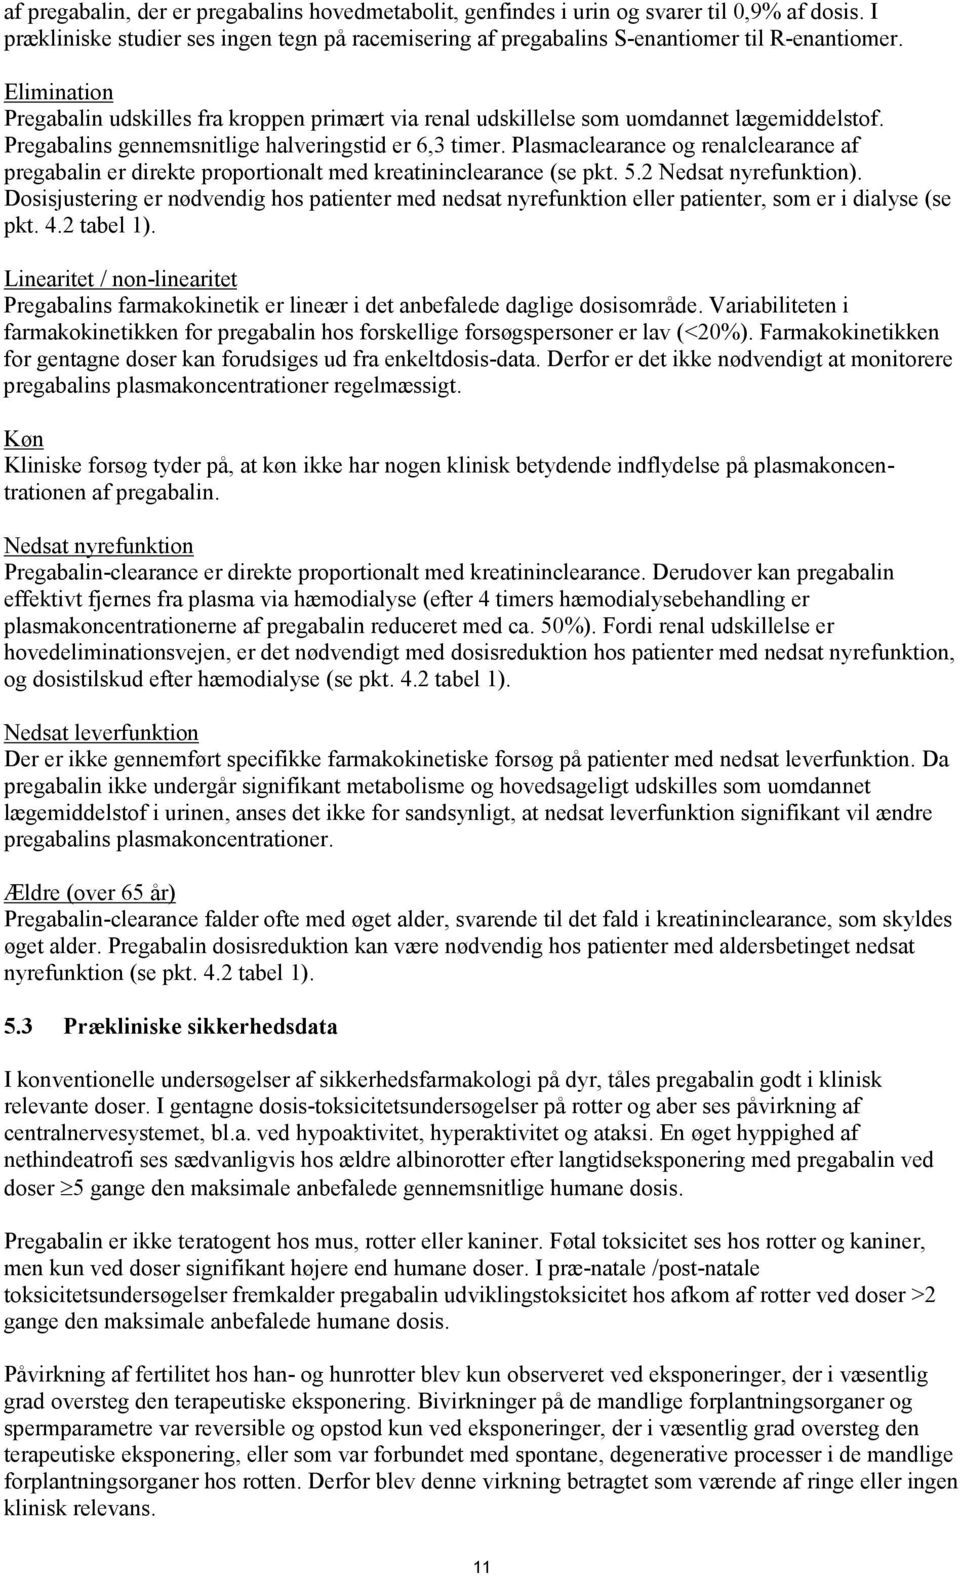 Plasmaclearance og renalclearance af pregabalin er direkte proportionalt med kreatininclearance (se pkt. 5.2 Nedsat nyrefunktion).